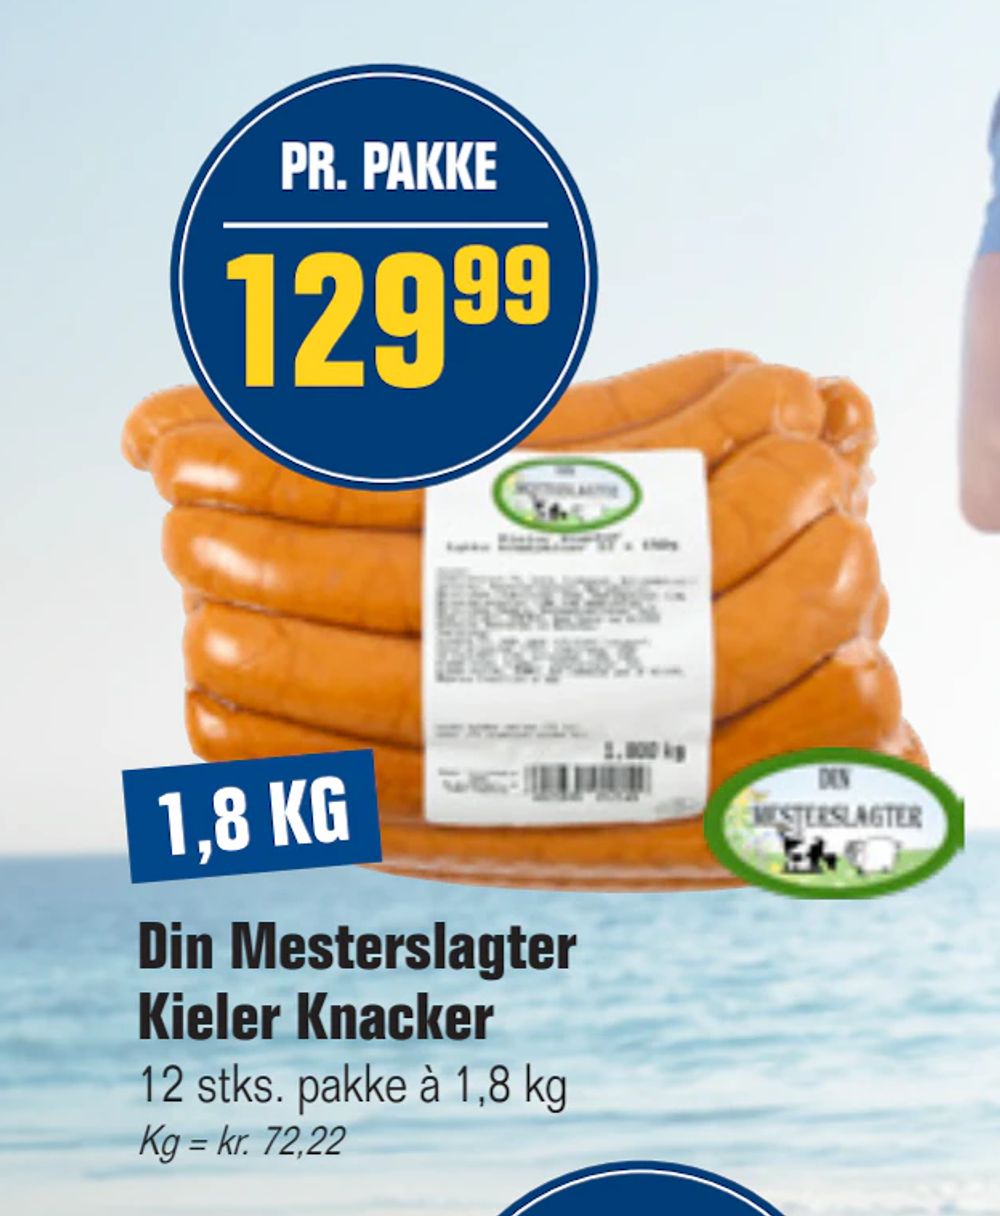 Tilbud på Din Mesterslagter Kieler Knacker fra Otto Duborg til 129,99 kr.